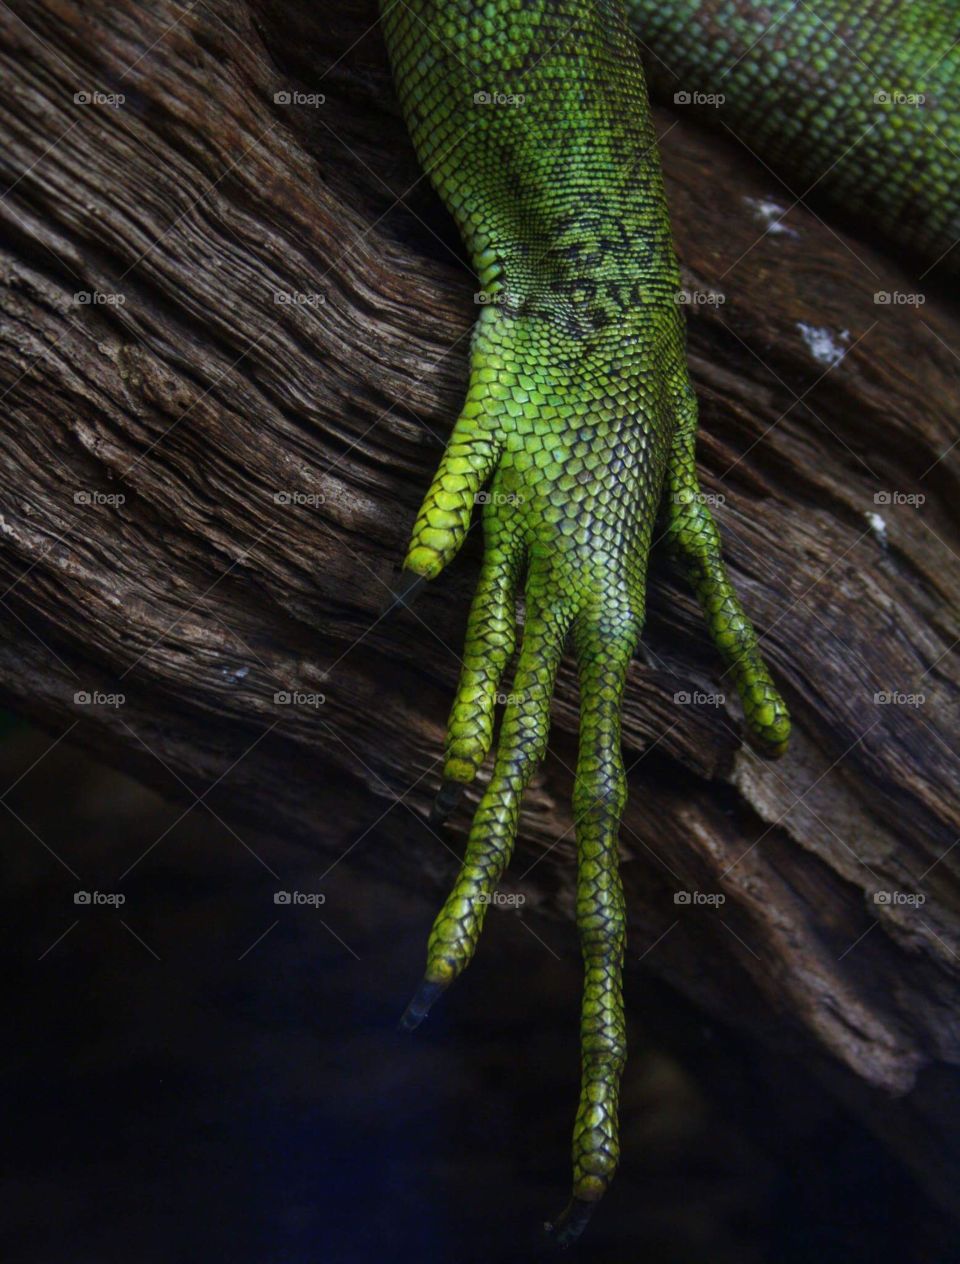 Lizard leg unedited version 